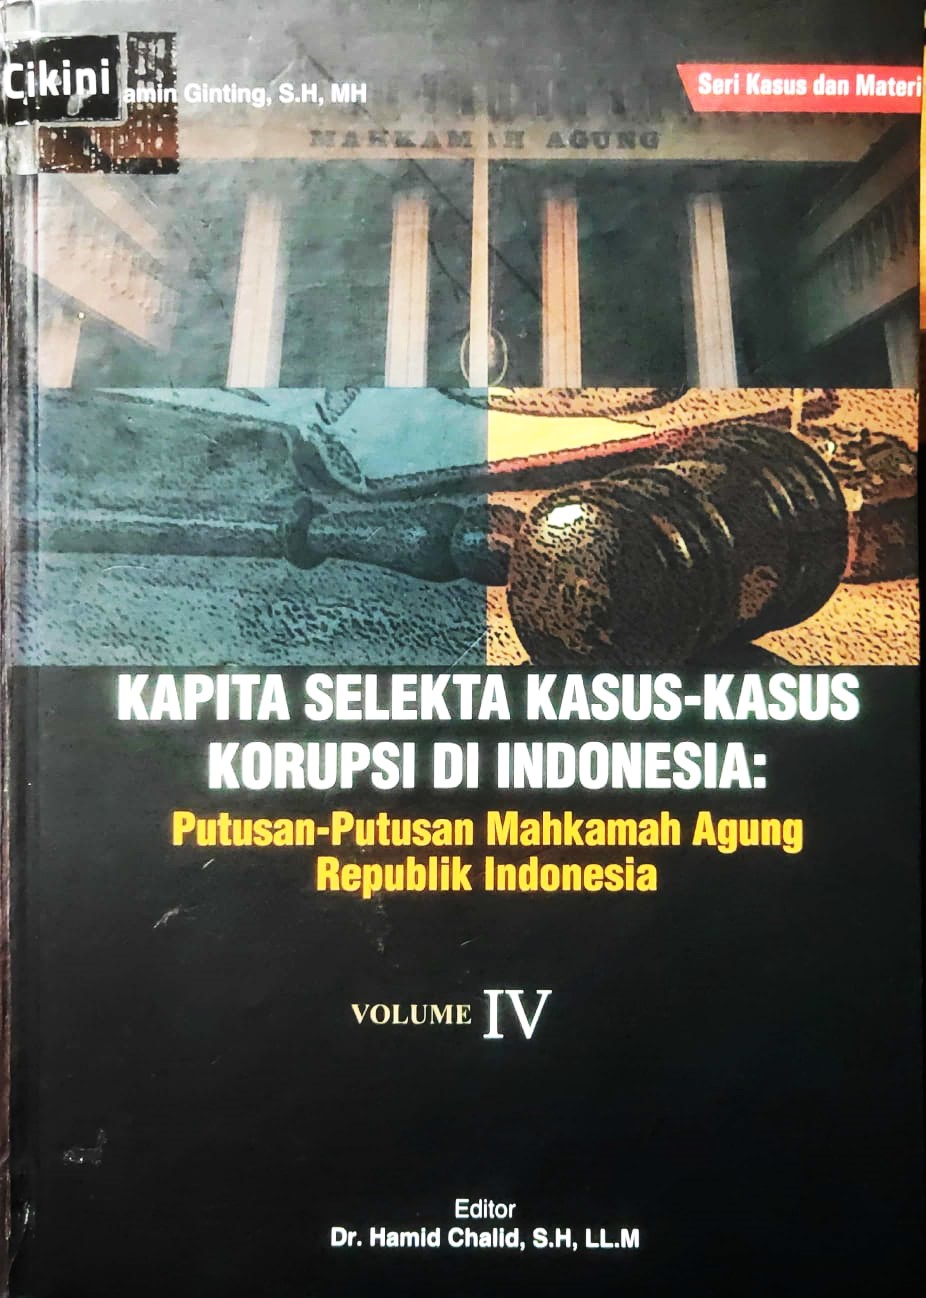 Kapita selekta kasus-kasus korupsi di Indonesia volume 4 :  putusan-putusan Mahkamah Agung Republik Indonesia